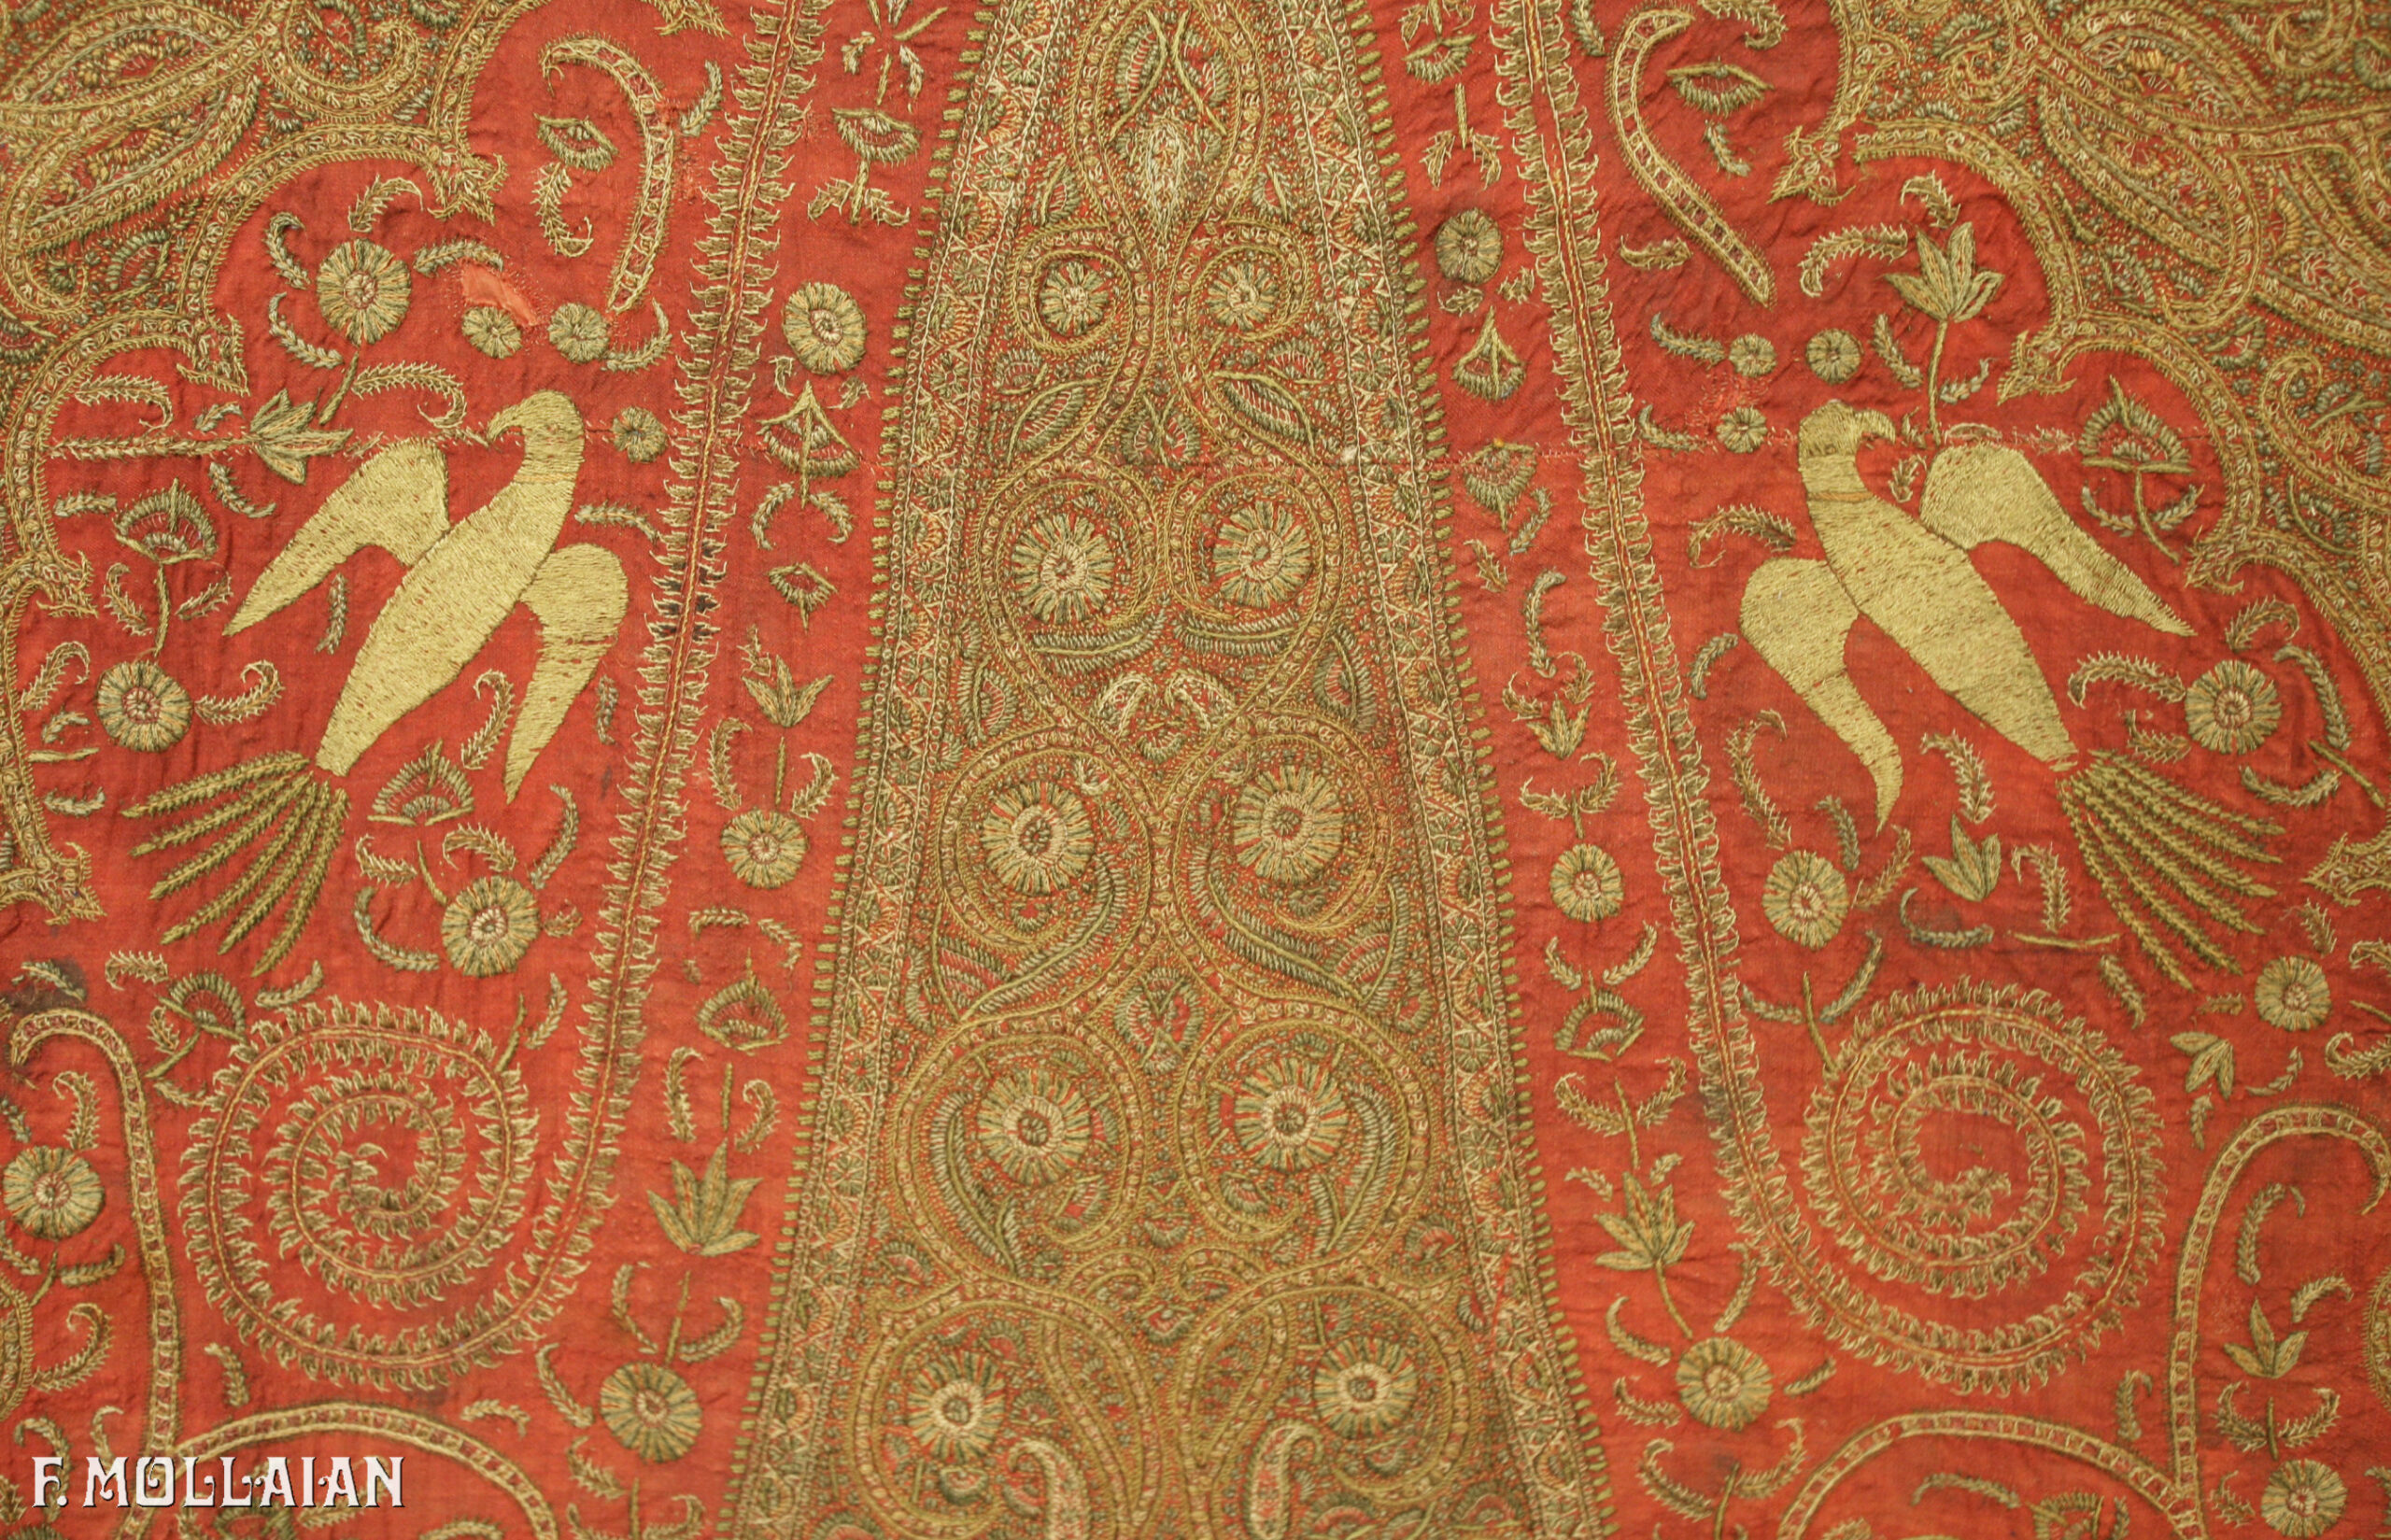 Antique Textile Kerman n°:44416551